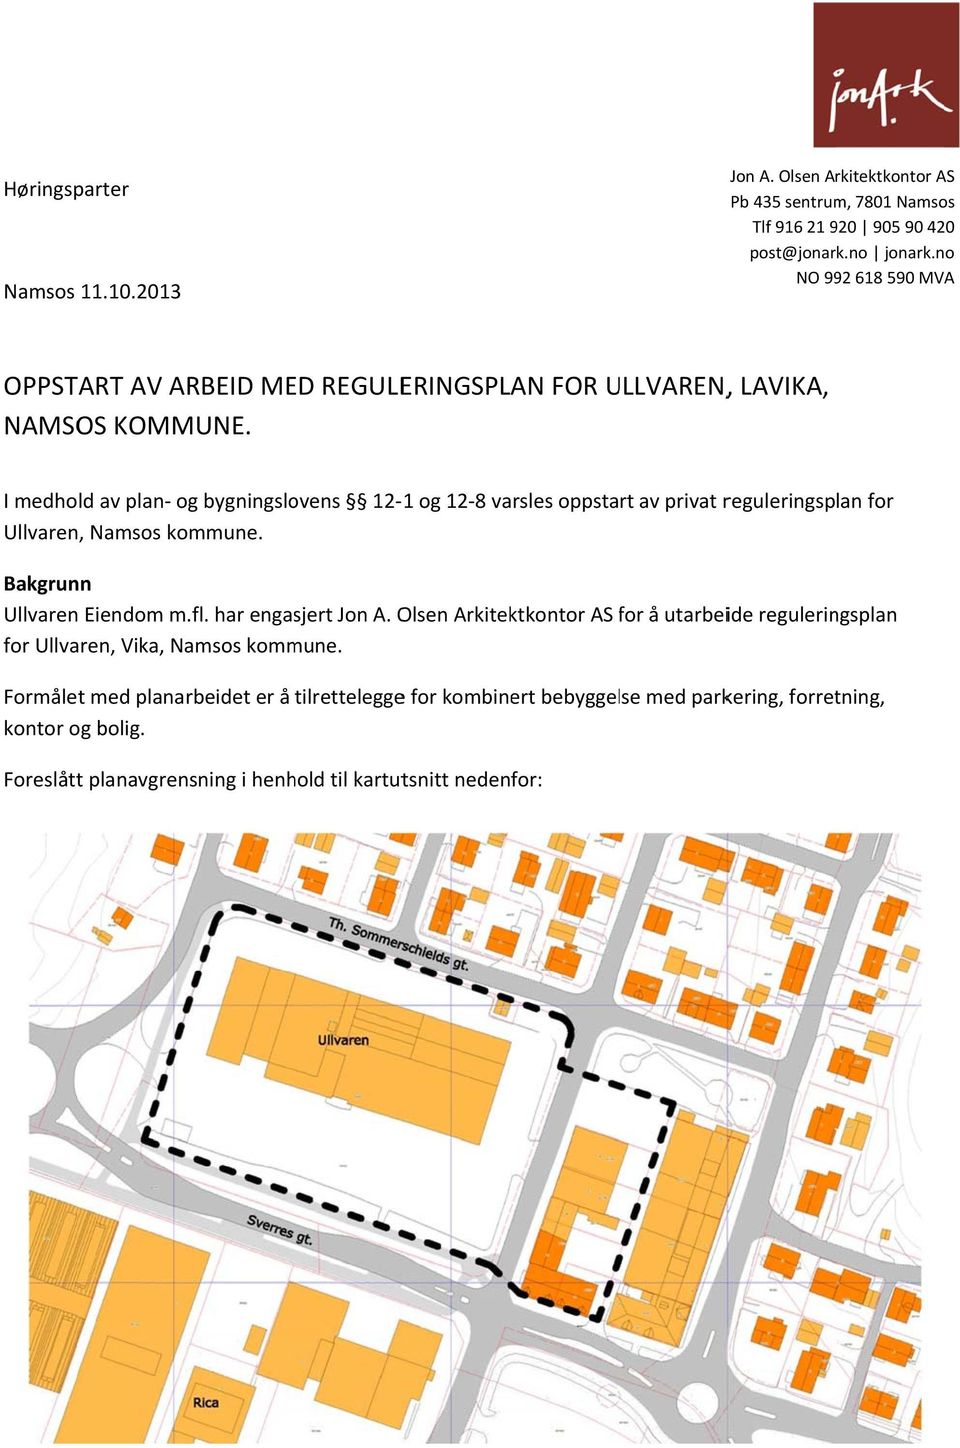 I medhold av plan og bygningslovens 12 1 og 12 8 varsles oppstart av privat reguleringsplan for Ullvaren, Namsos kommune. Bakgrunn Ullvaren Eiendom m.fl.